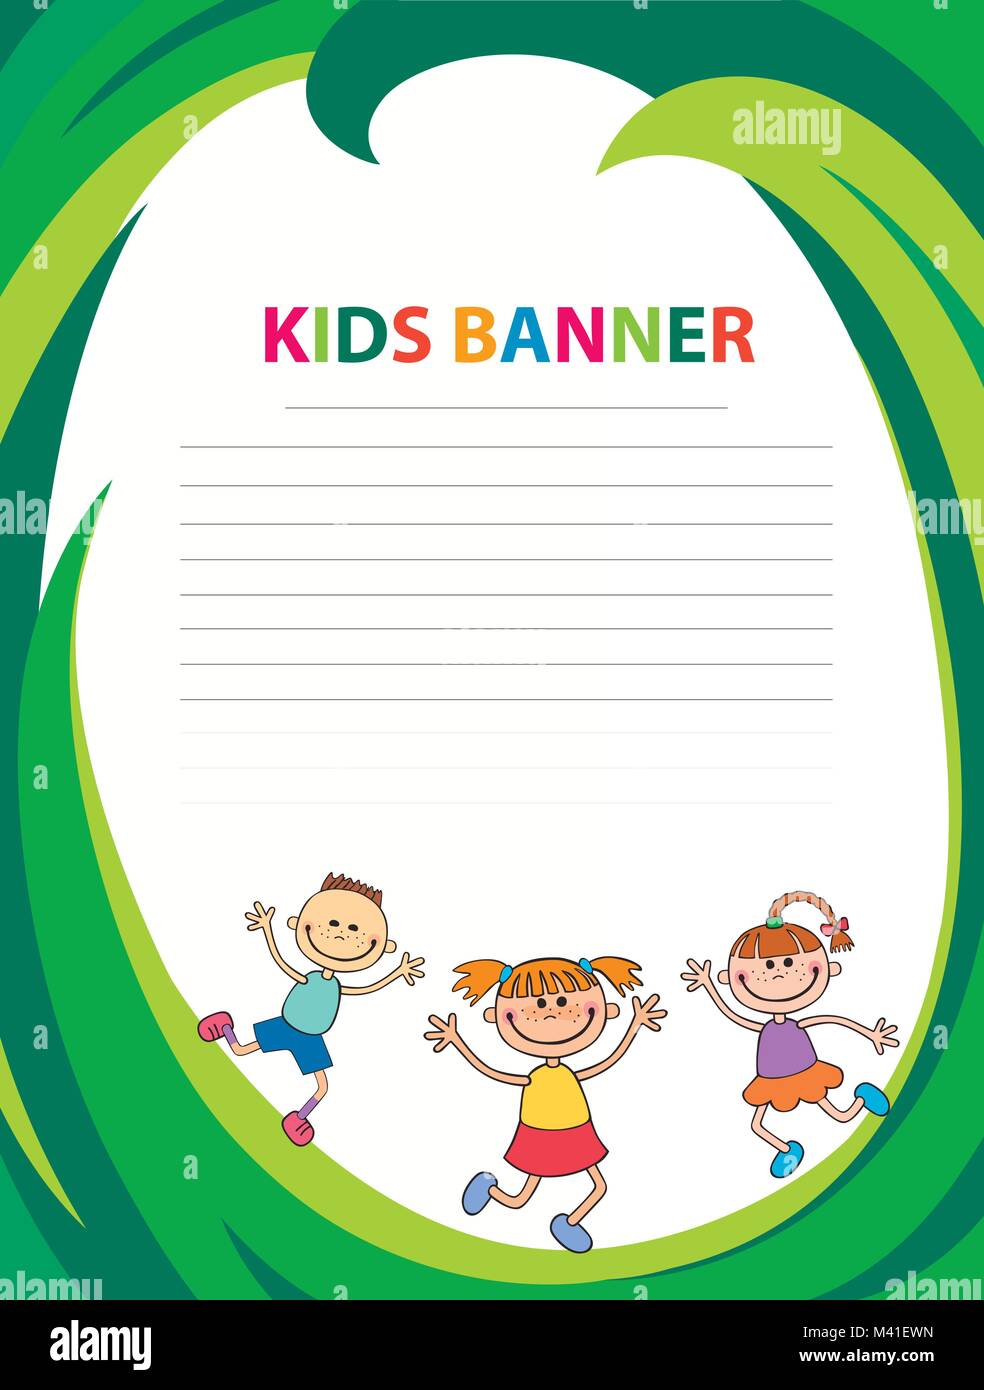 Bambini allegri corrono sul banner template vettoriale backround colorati Illustrazione Vettoriale